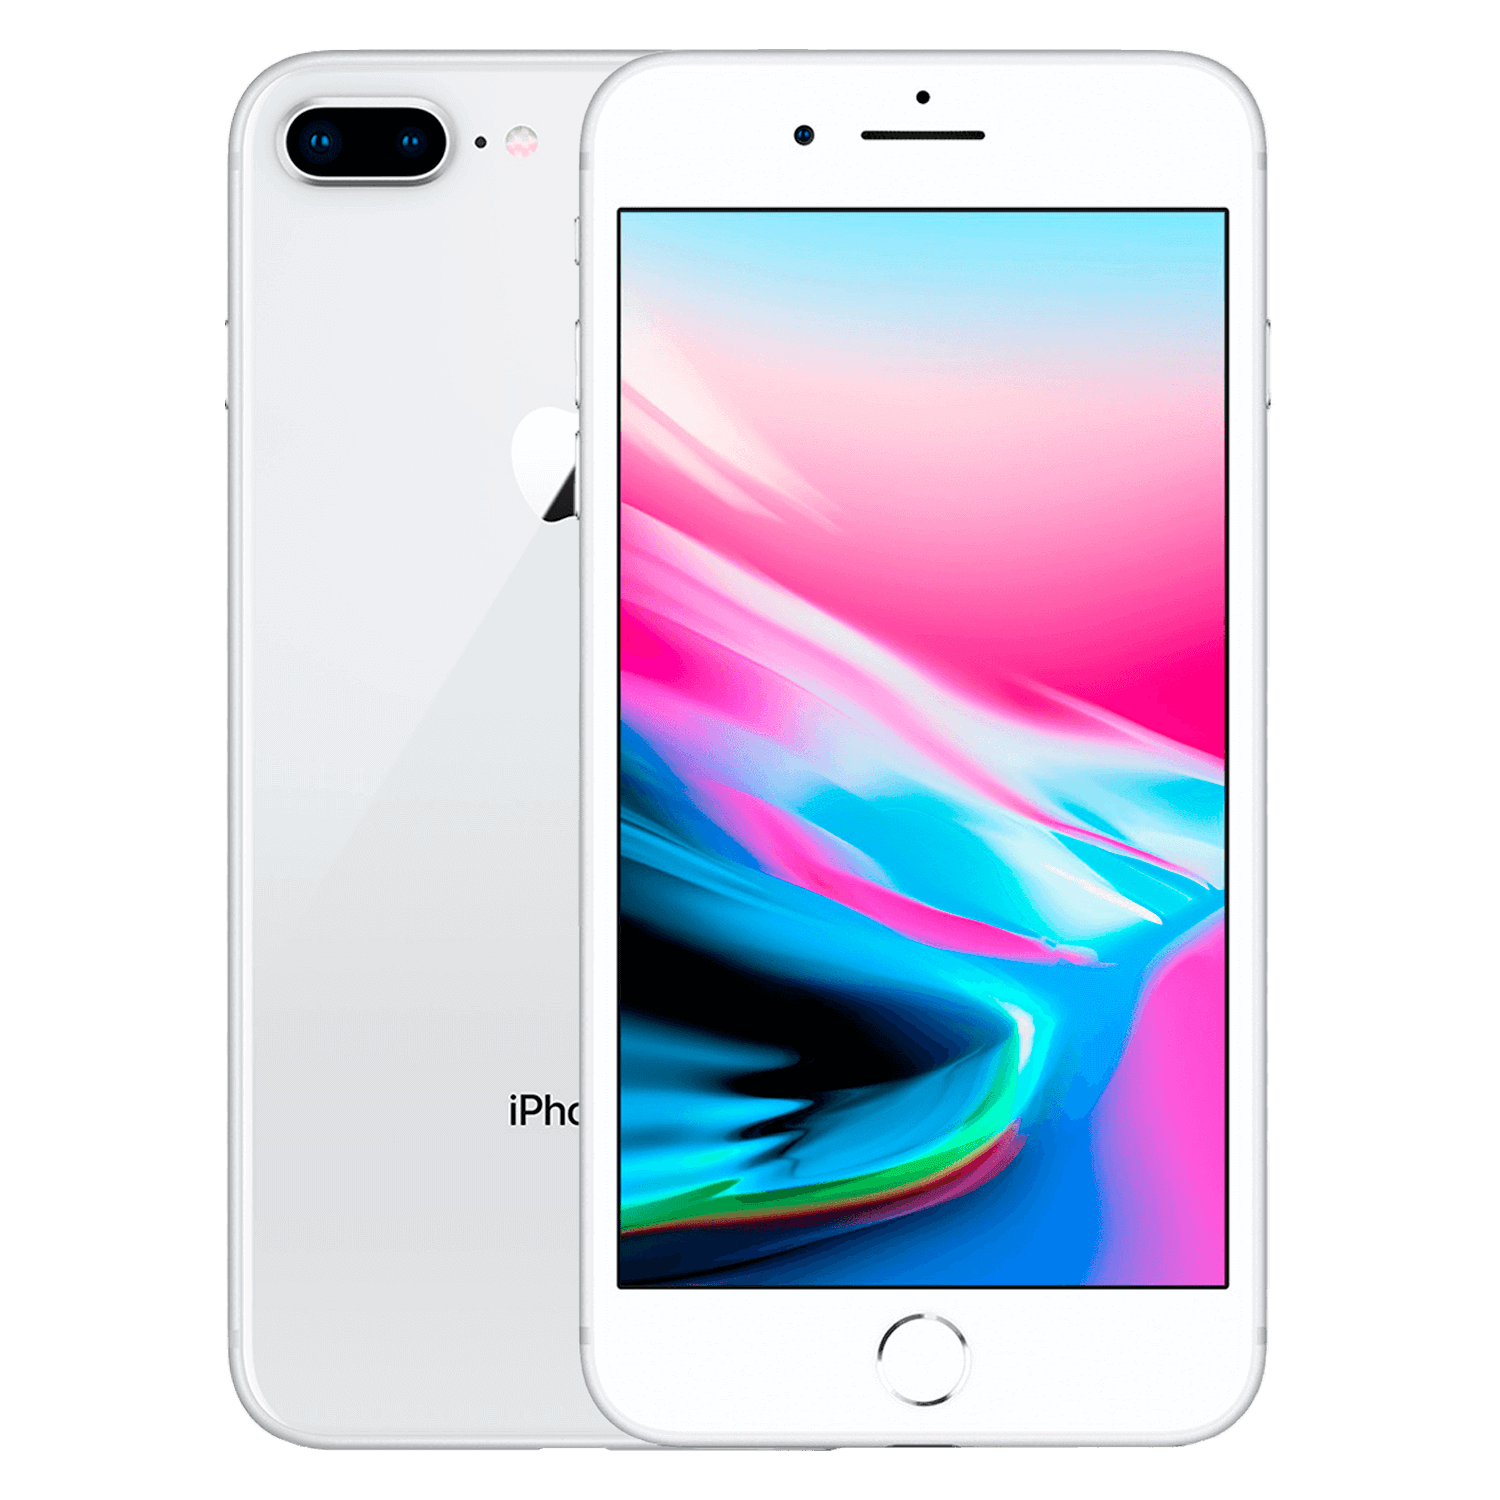 Apple iPhone 8 Plus *Swap A+* A1864 1897 64GB 3GB RAM Tela 5.5" - Prata (Somente Aparelho)